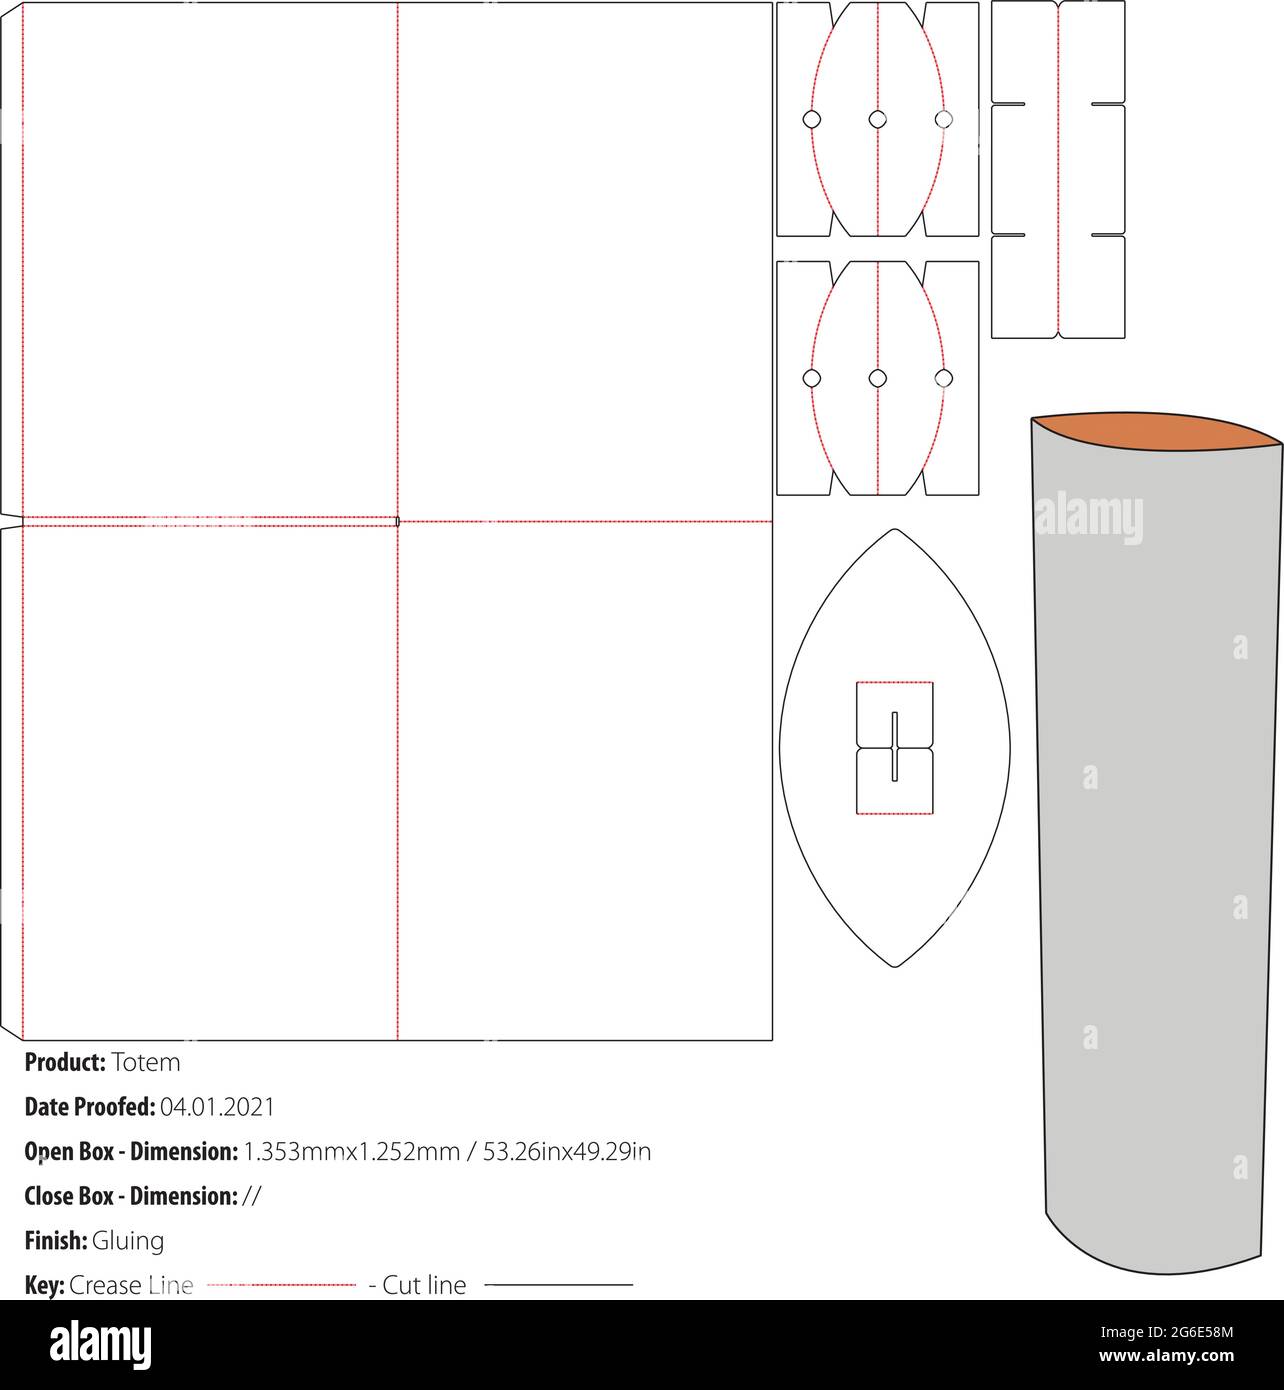 Totem POS Floor Display progettazione imballo modello incollaggio fustellato - vettoriale Illustrazione Vettoriale